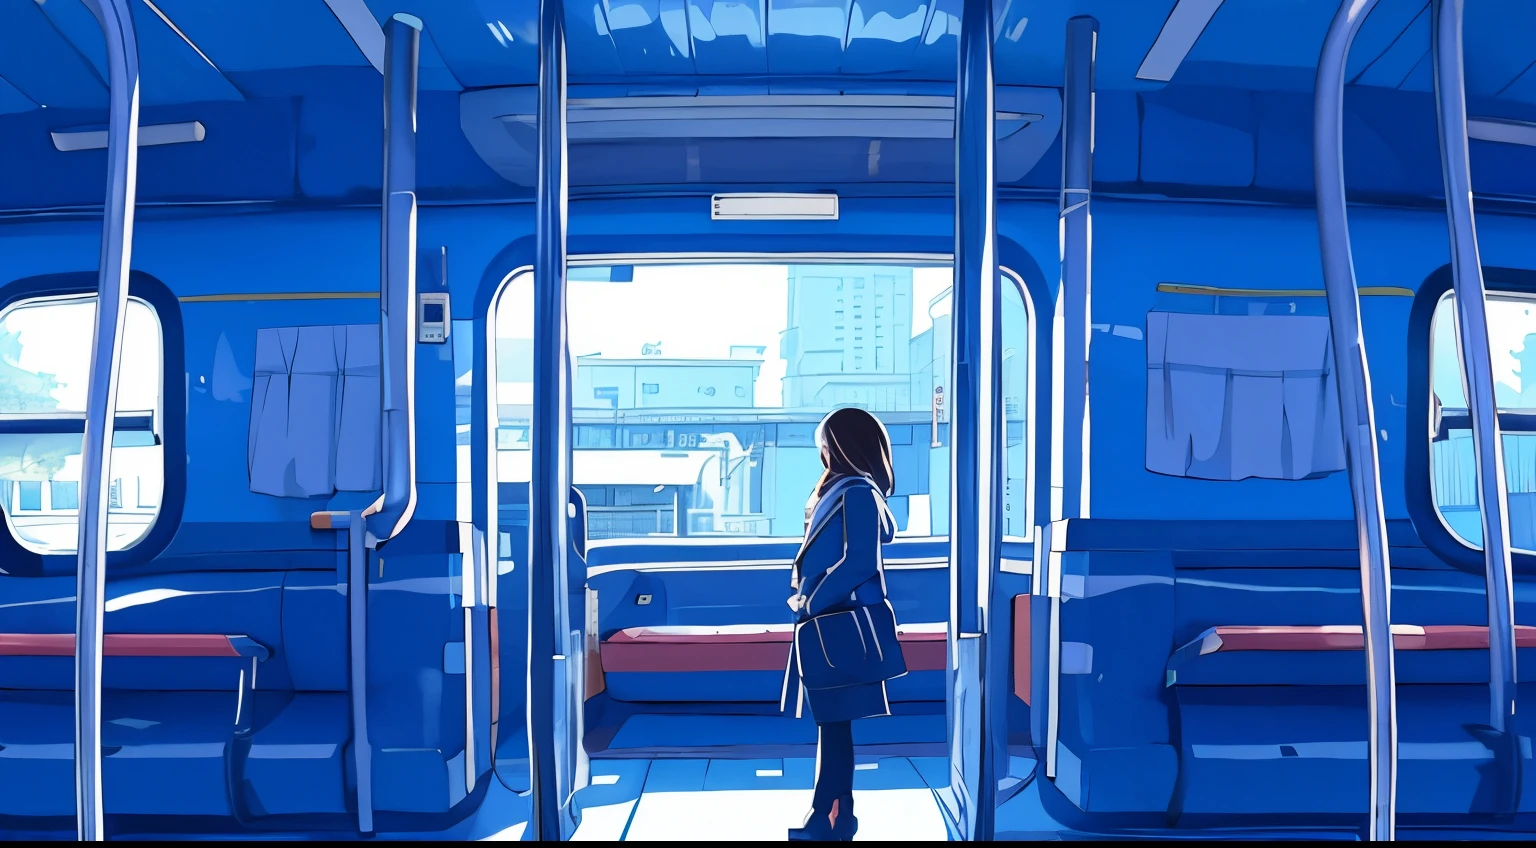 Eine Frau in einem blauen Mantel steht auf einem Bahnsteig, schaut auf ihr Telefon.